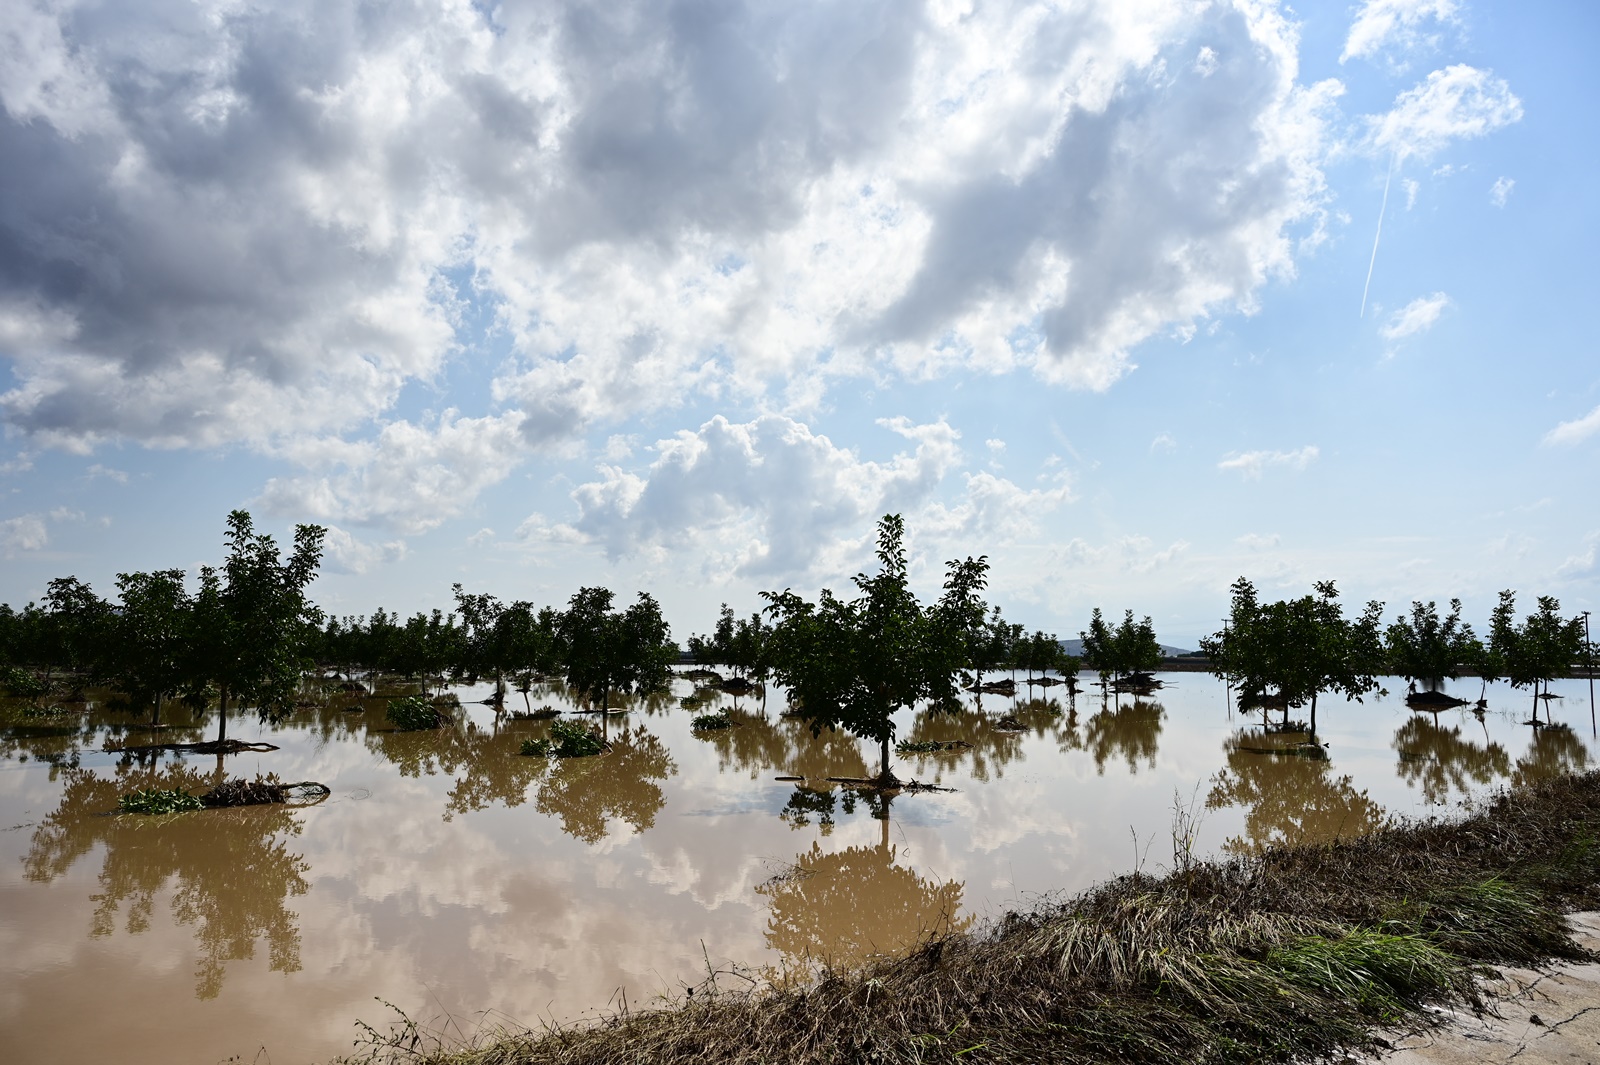 Λίμνη Κάρλα μετά τις πλημμύρες: Σαν μια απέραντη φουρτουνιασμένη θάλασσα